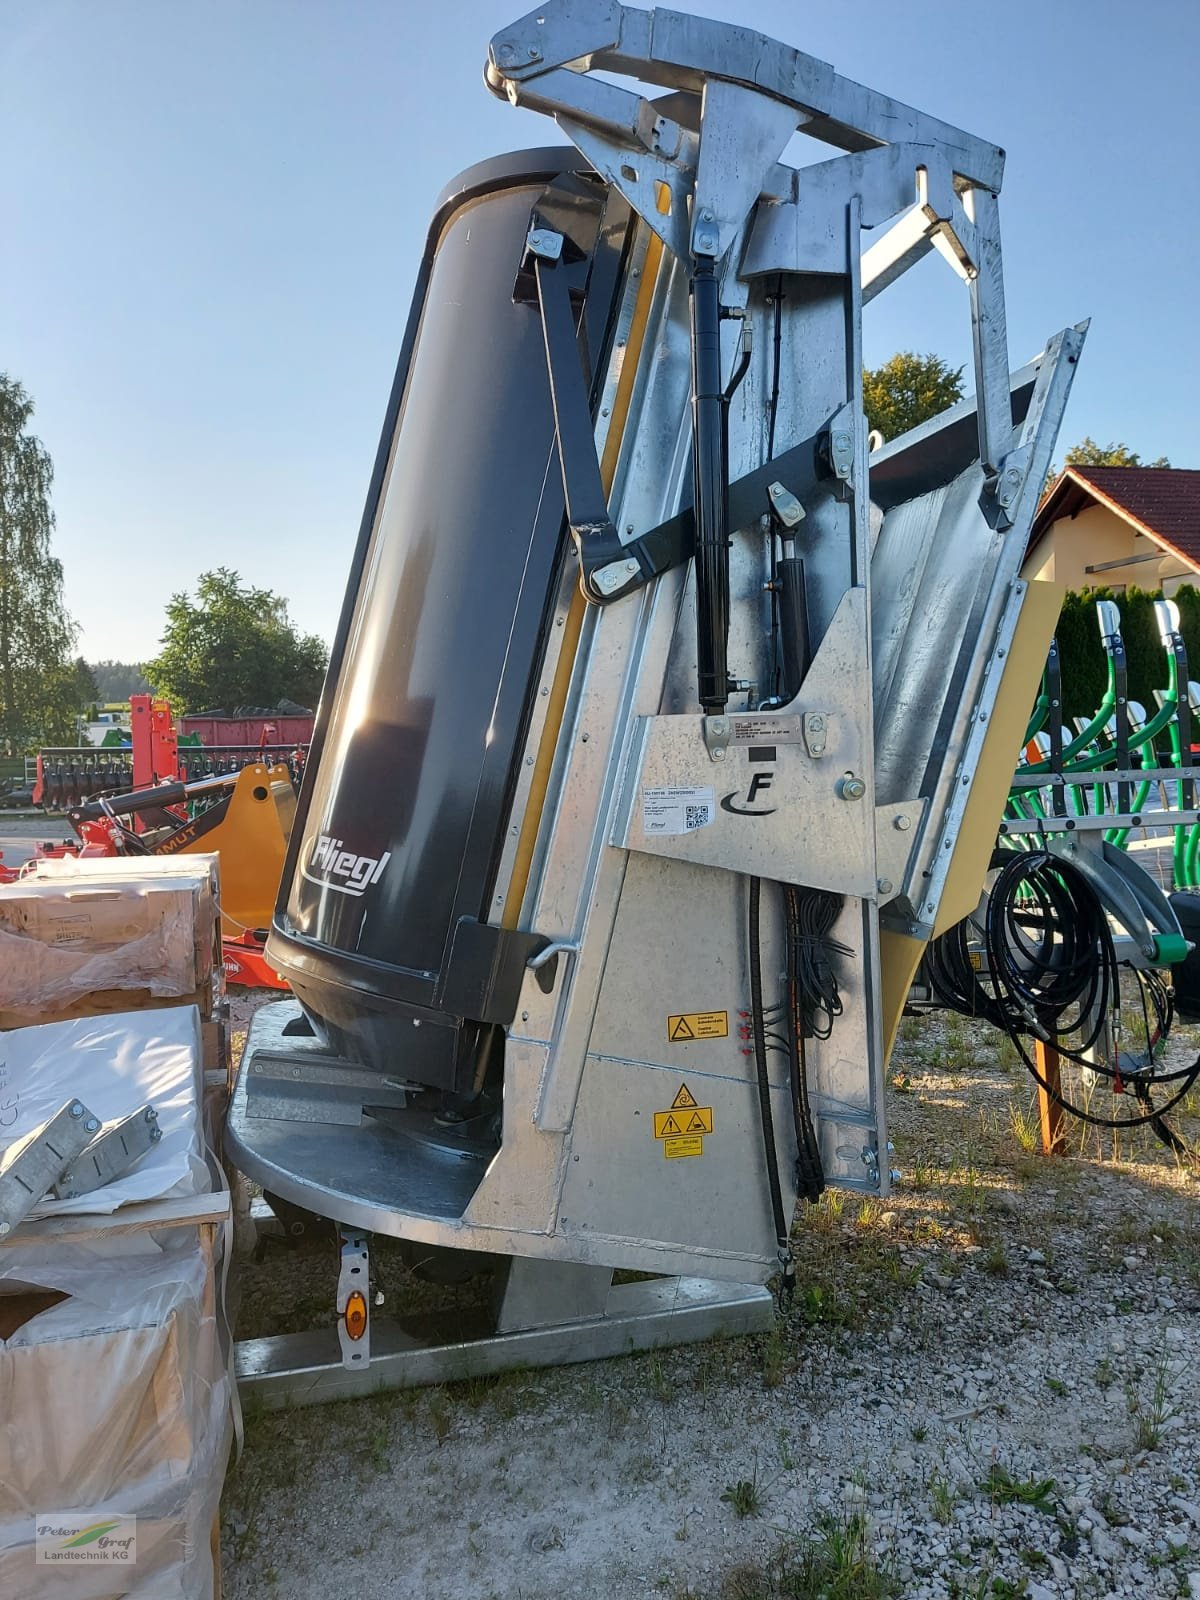 Abschiebewagen des Typs Fliegl Streuwerk Profi, Neumaschine in Pegnitz-Bronn (Bild 1)